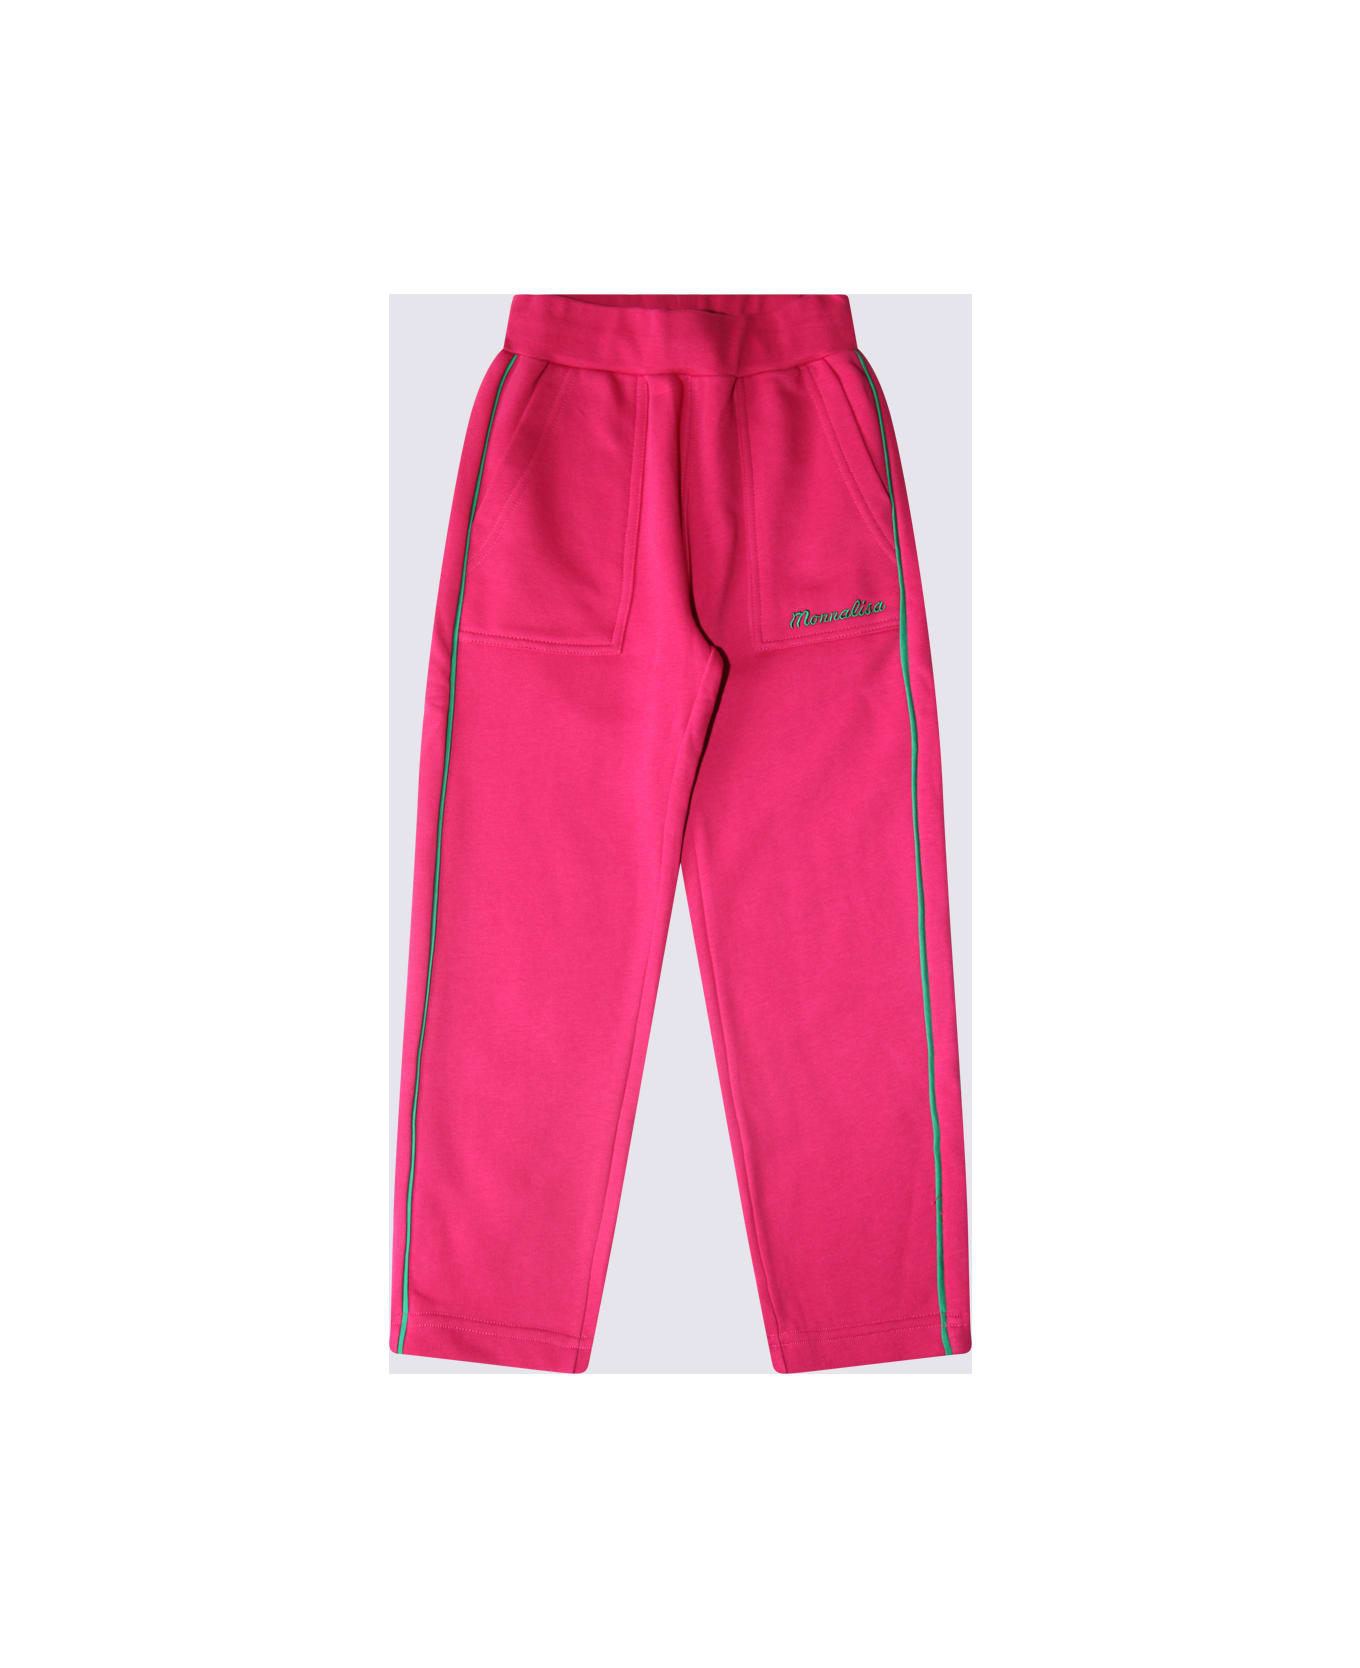 Monnalisa Pink Cotton Pants - Pink ボトムス